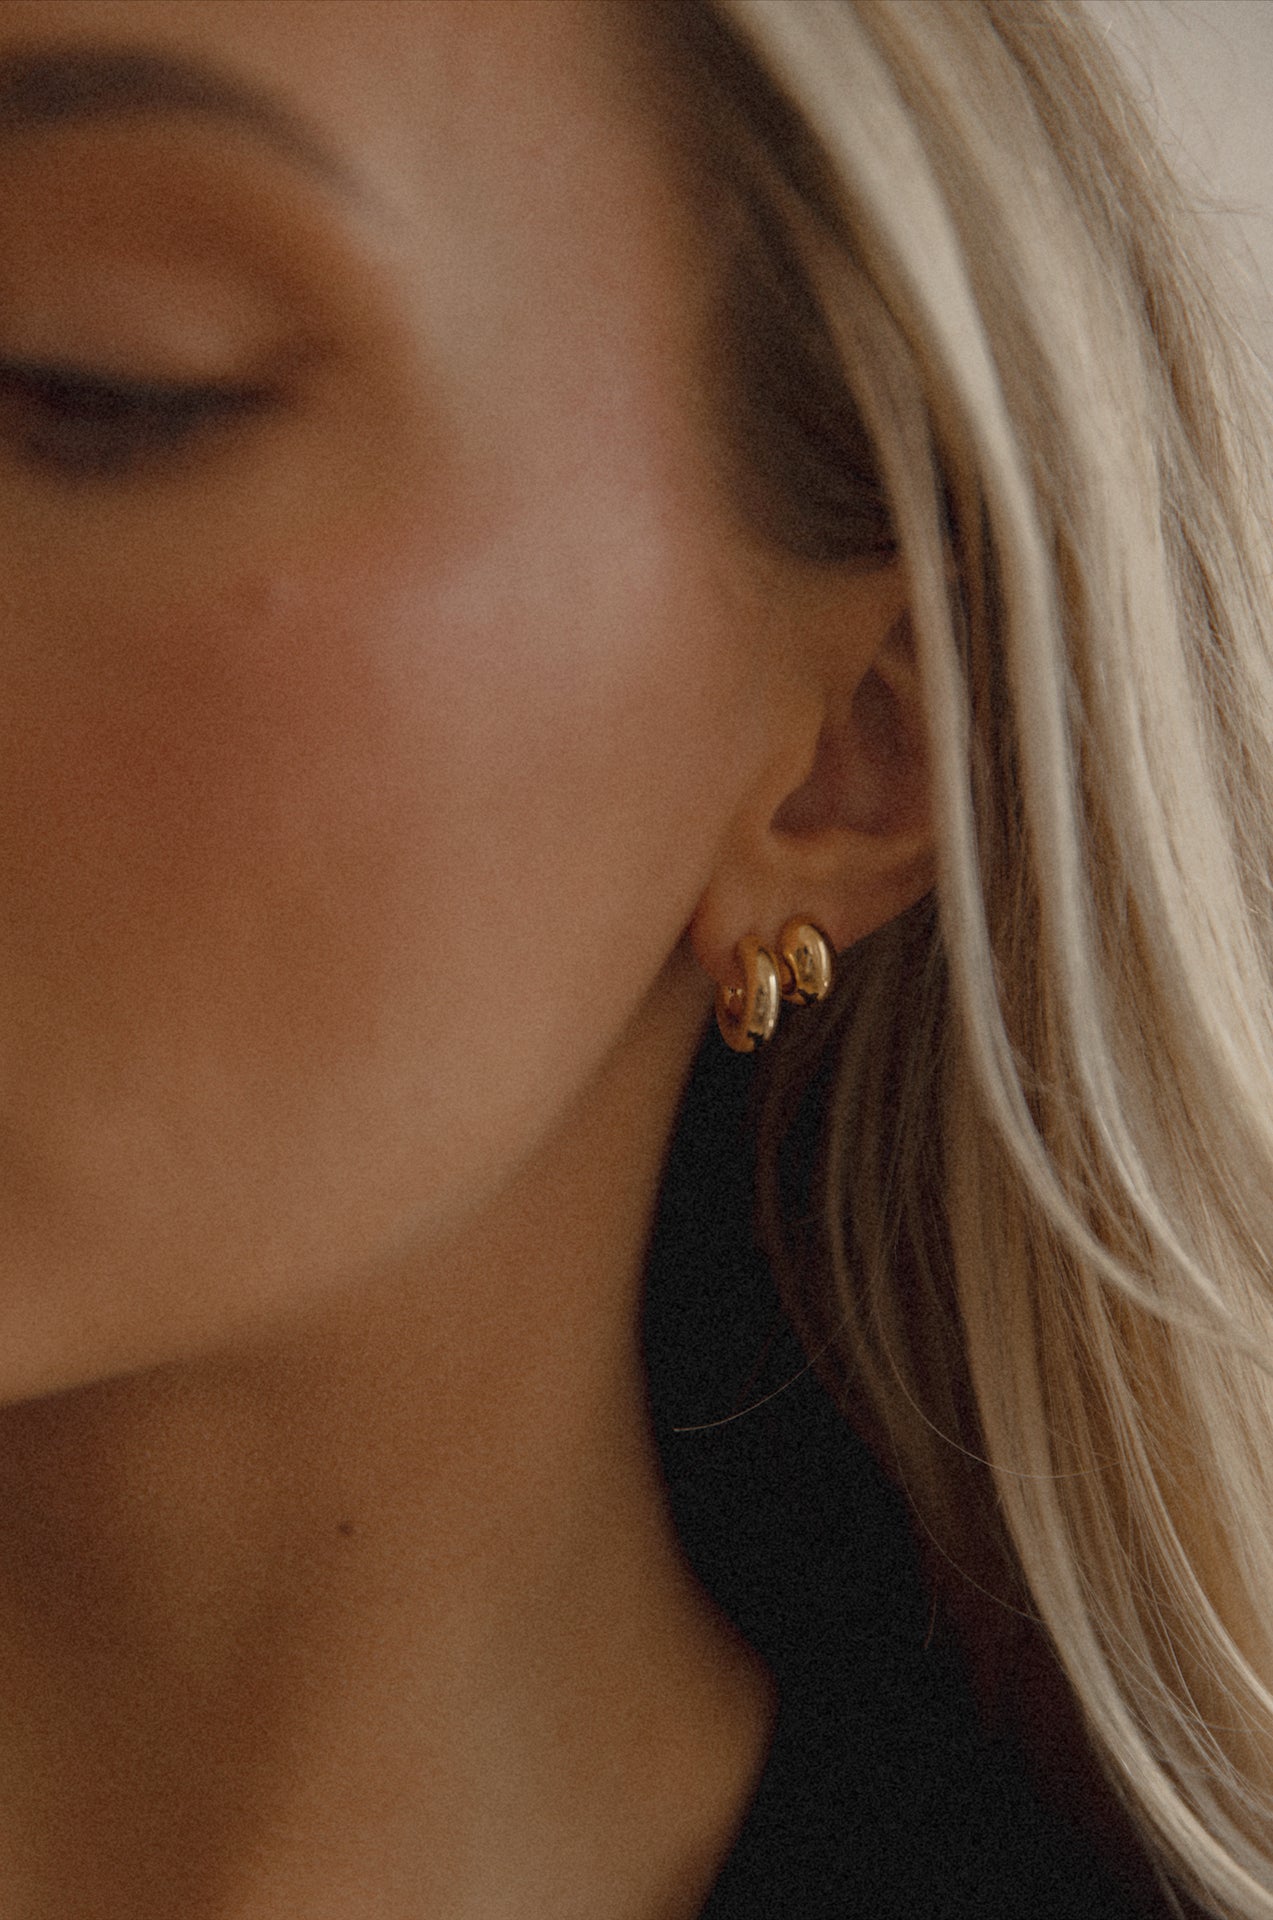 18k gold dome earrings